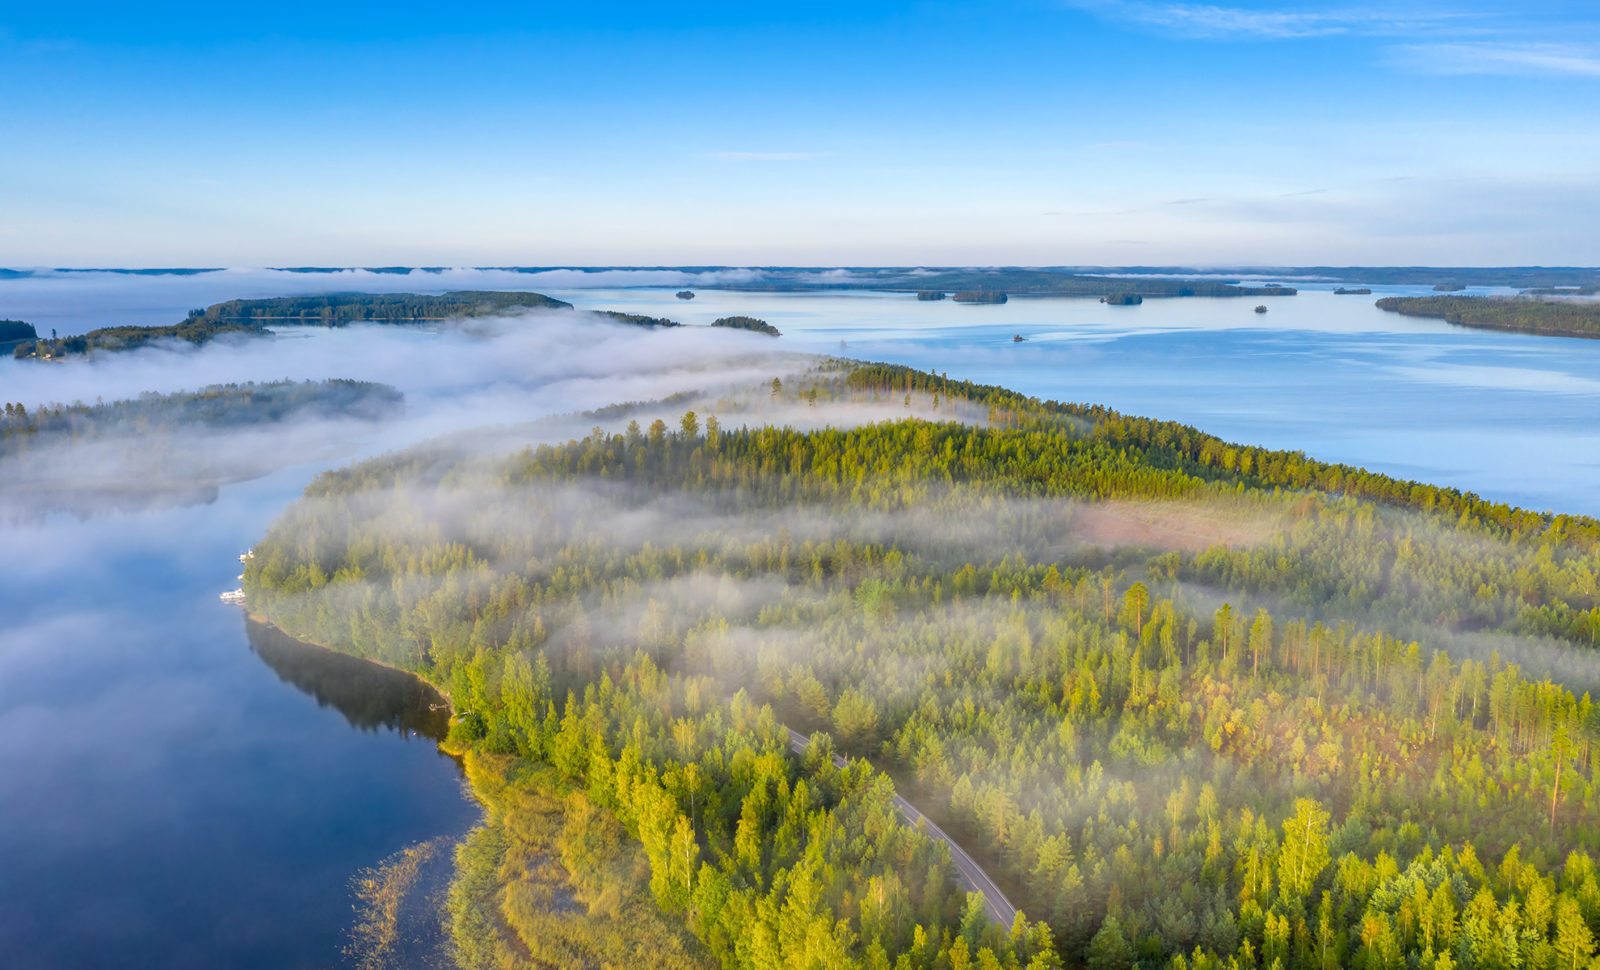 Landscape Finland scaled Esencja lodowca zamknięta w butelce